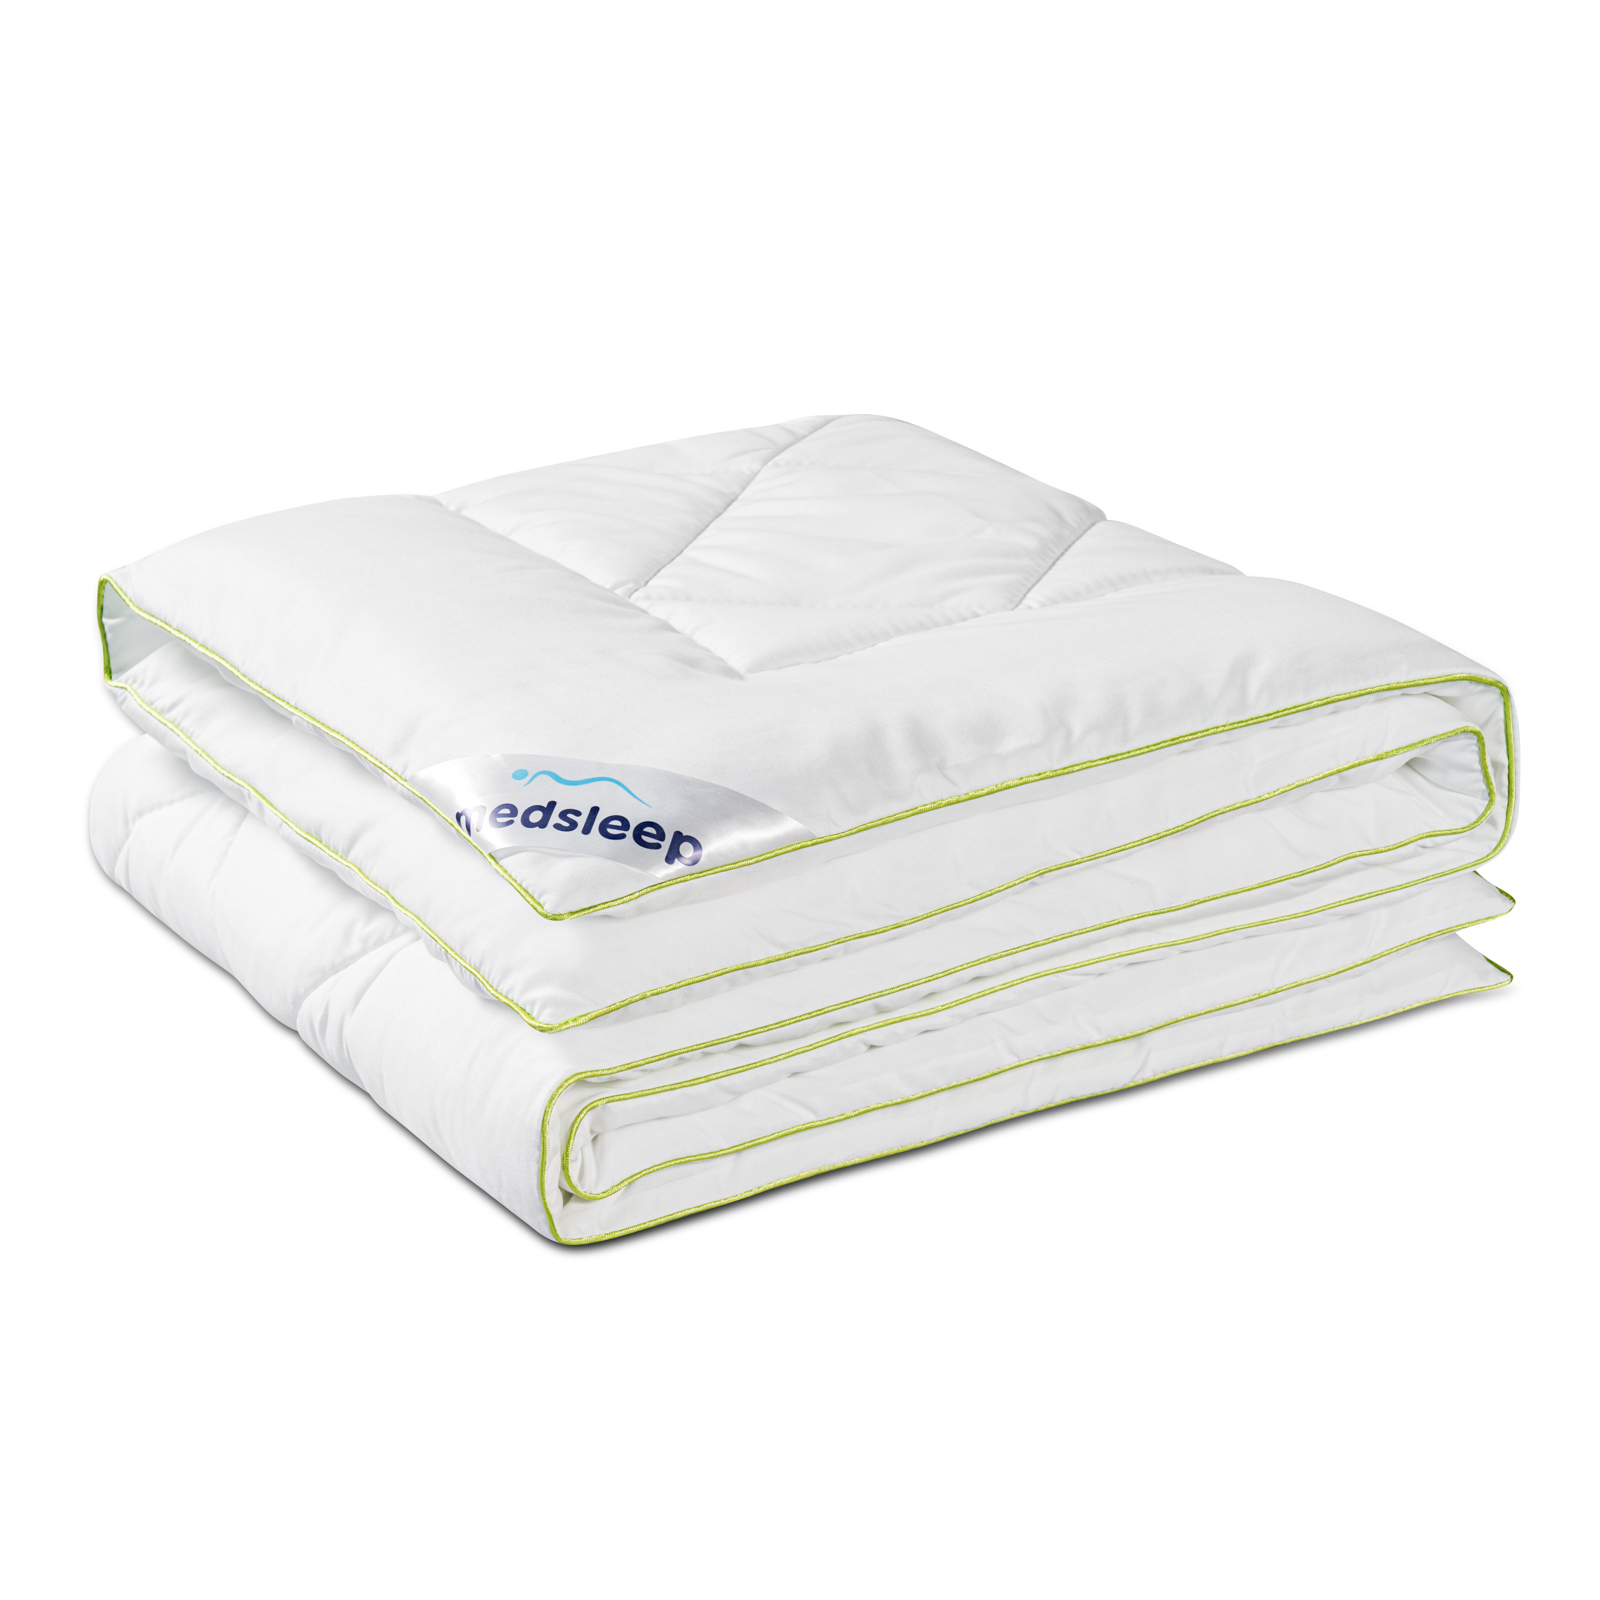 Одеяло Medsleep Dao белое 110х140 см одеяло утяжелённое medsleep дефорте белое 140х200 см